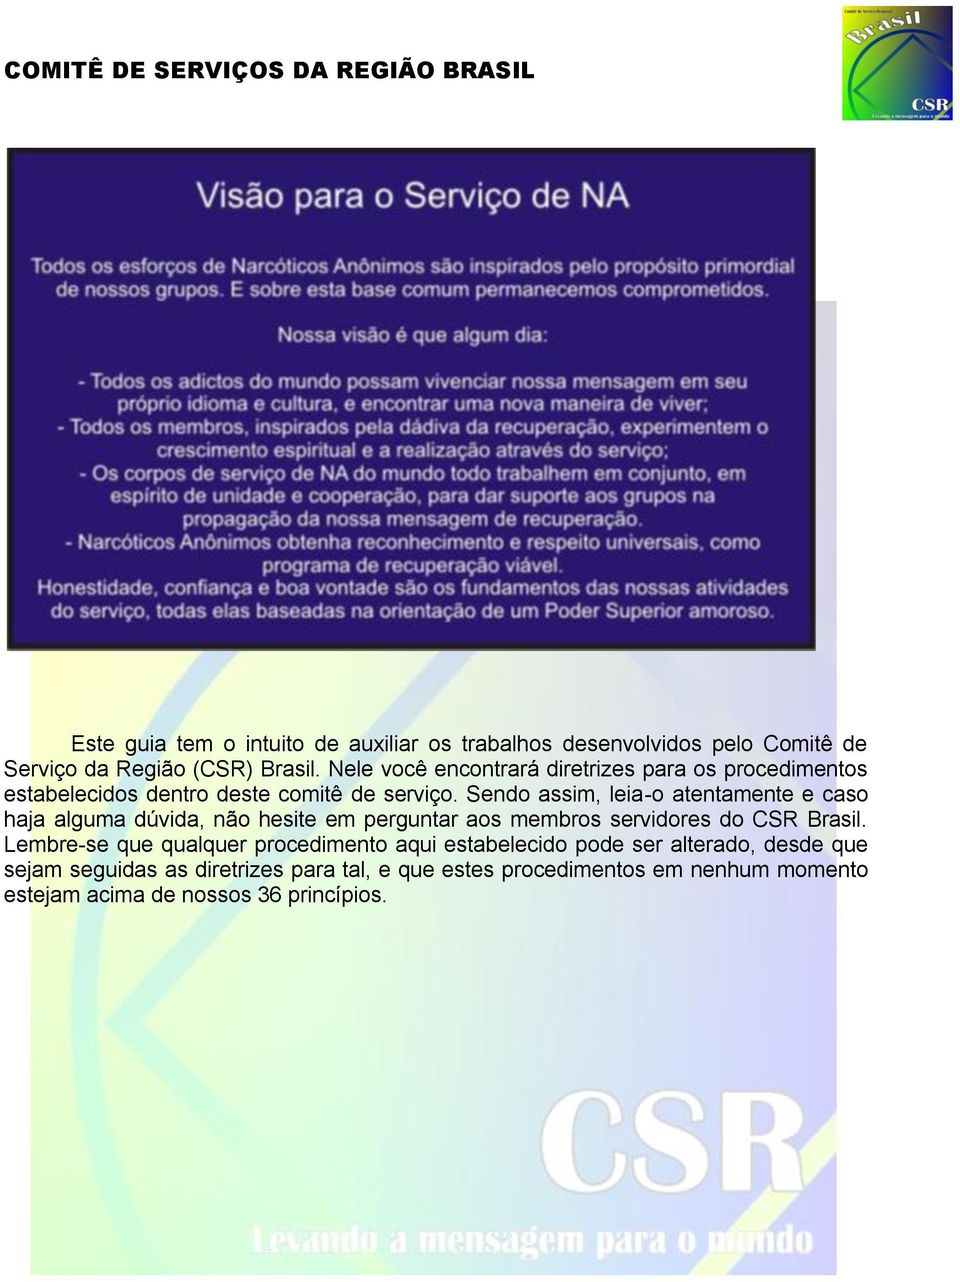 Sendo assim, leia-o atentamente e caso haja alguma dúvida, não hesite em perguntar aos membros servidores do CSR Brasil.